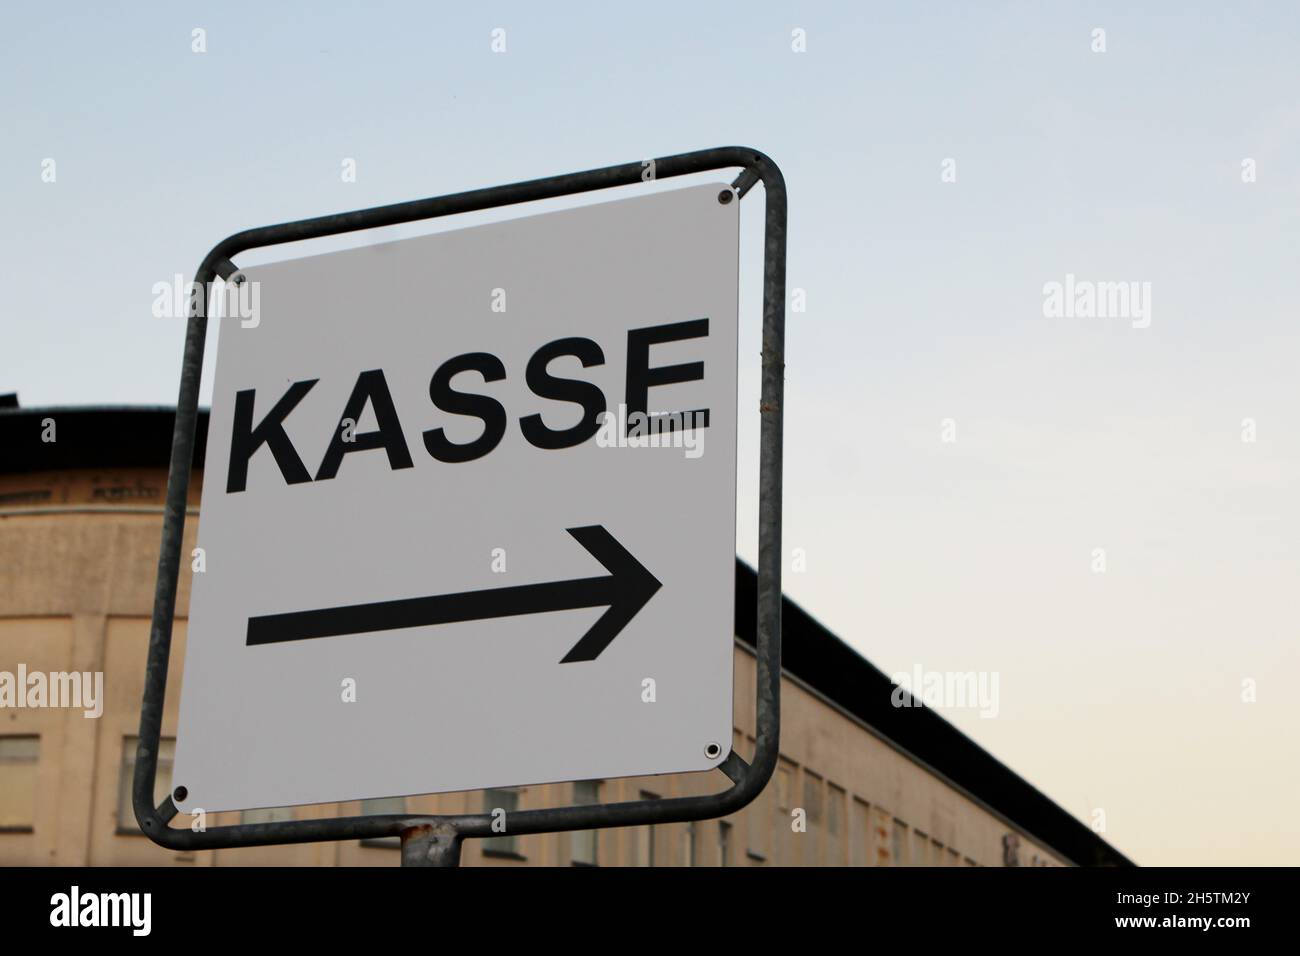 Ein weißes Schild mit schwarzer Schrift 'Kasse' mit Pfeil in Richtung rechts. Rügen, Deutschland. Stock Photo